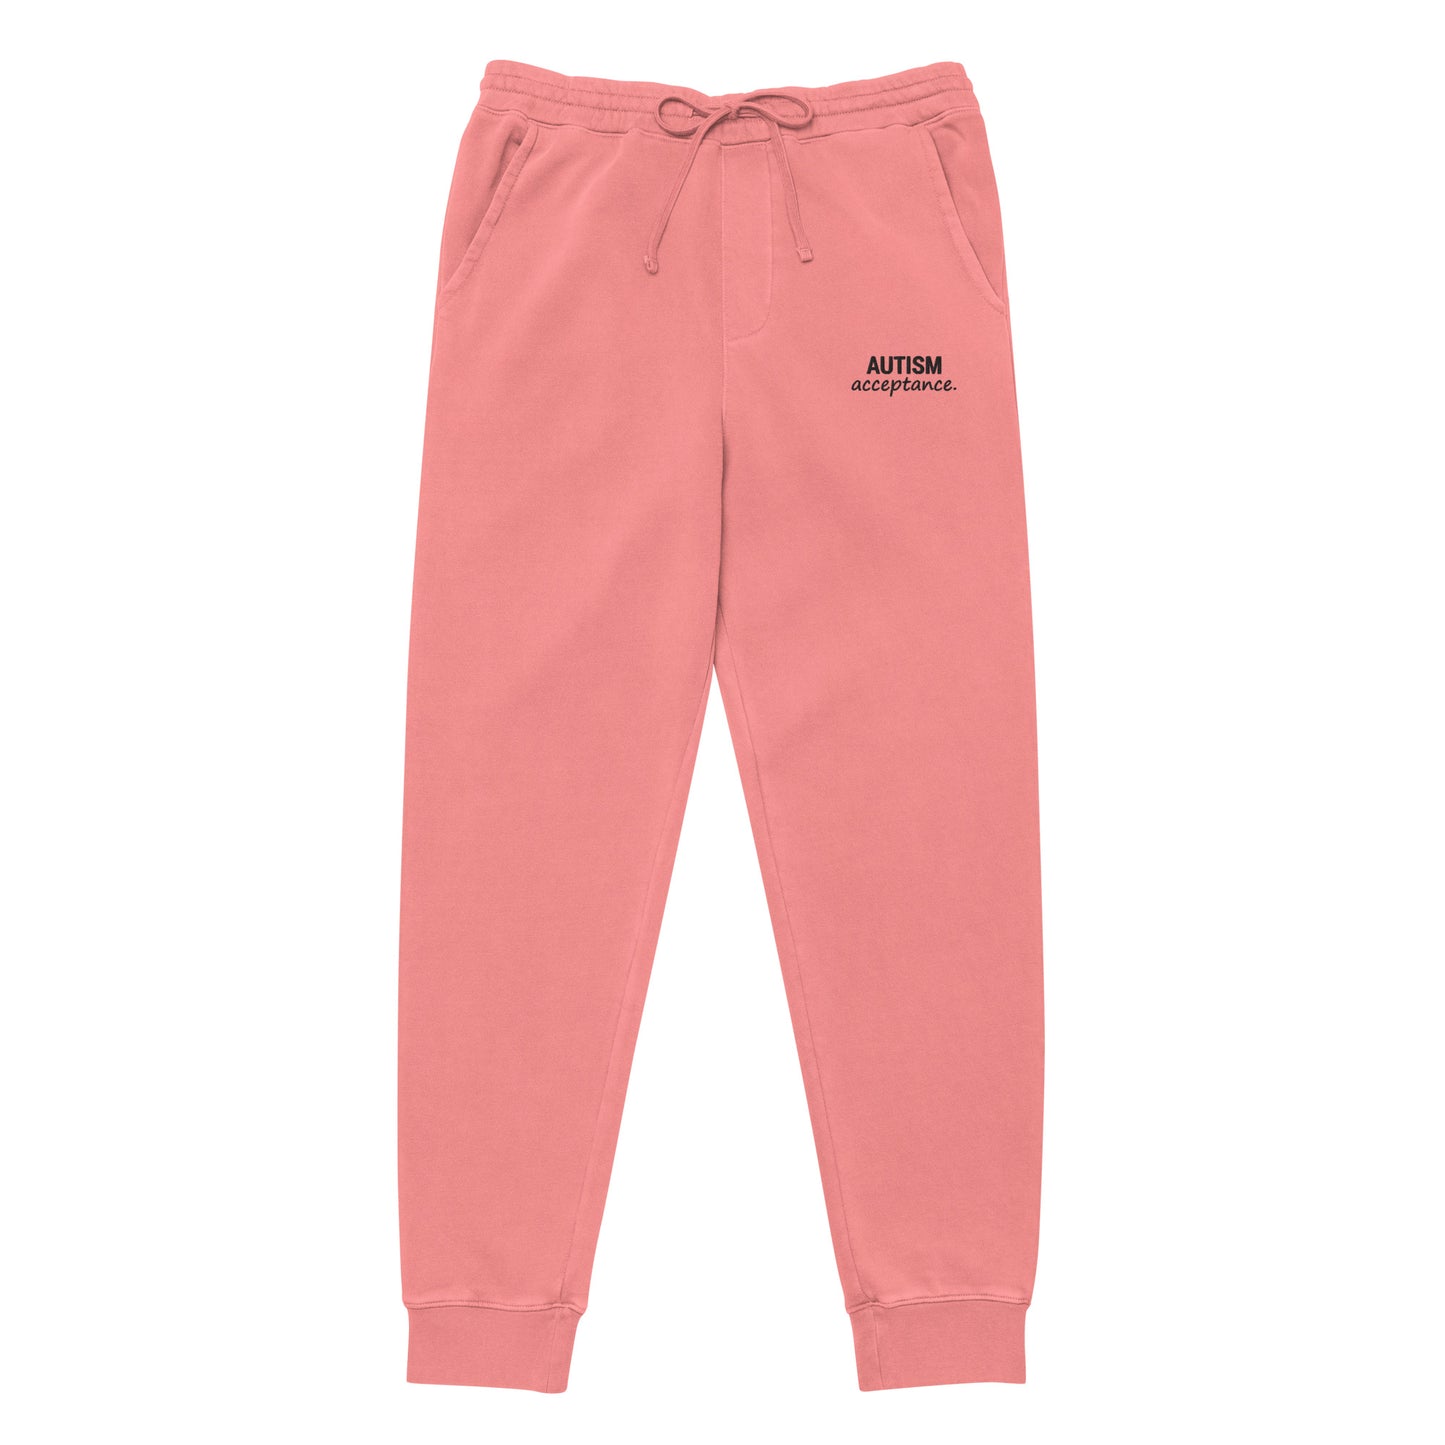 Autism Acceptance Sweatpants (Pigment Pink)